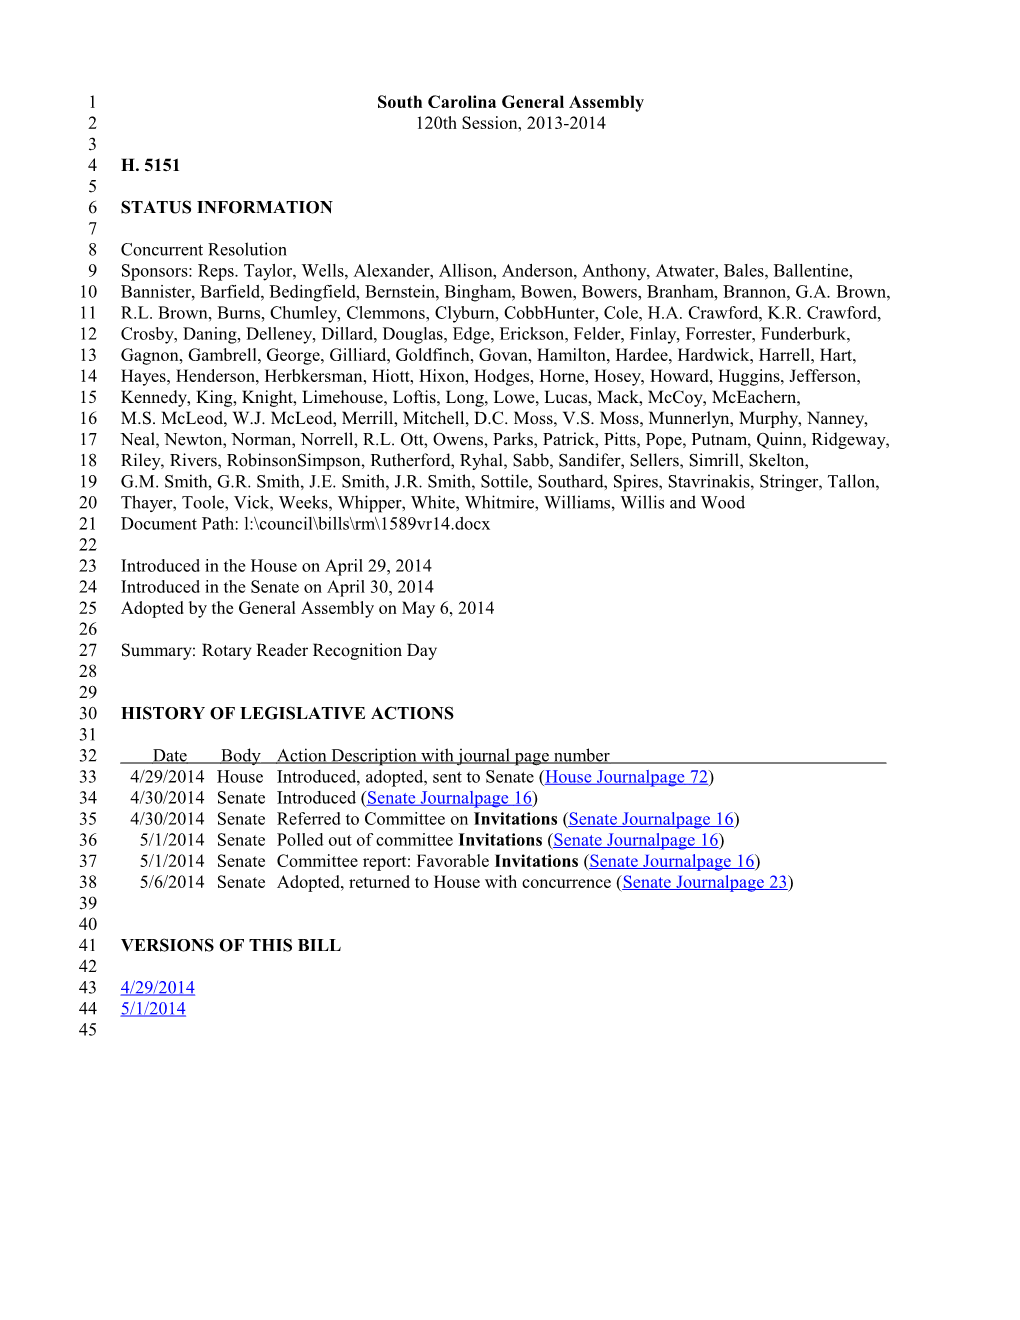 2013-2014 Bill 5151: Rotary Reader Recognition Day - South Carolina Legislature Online